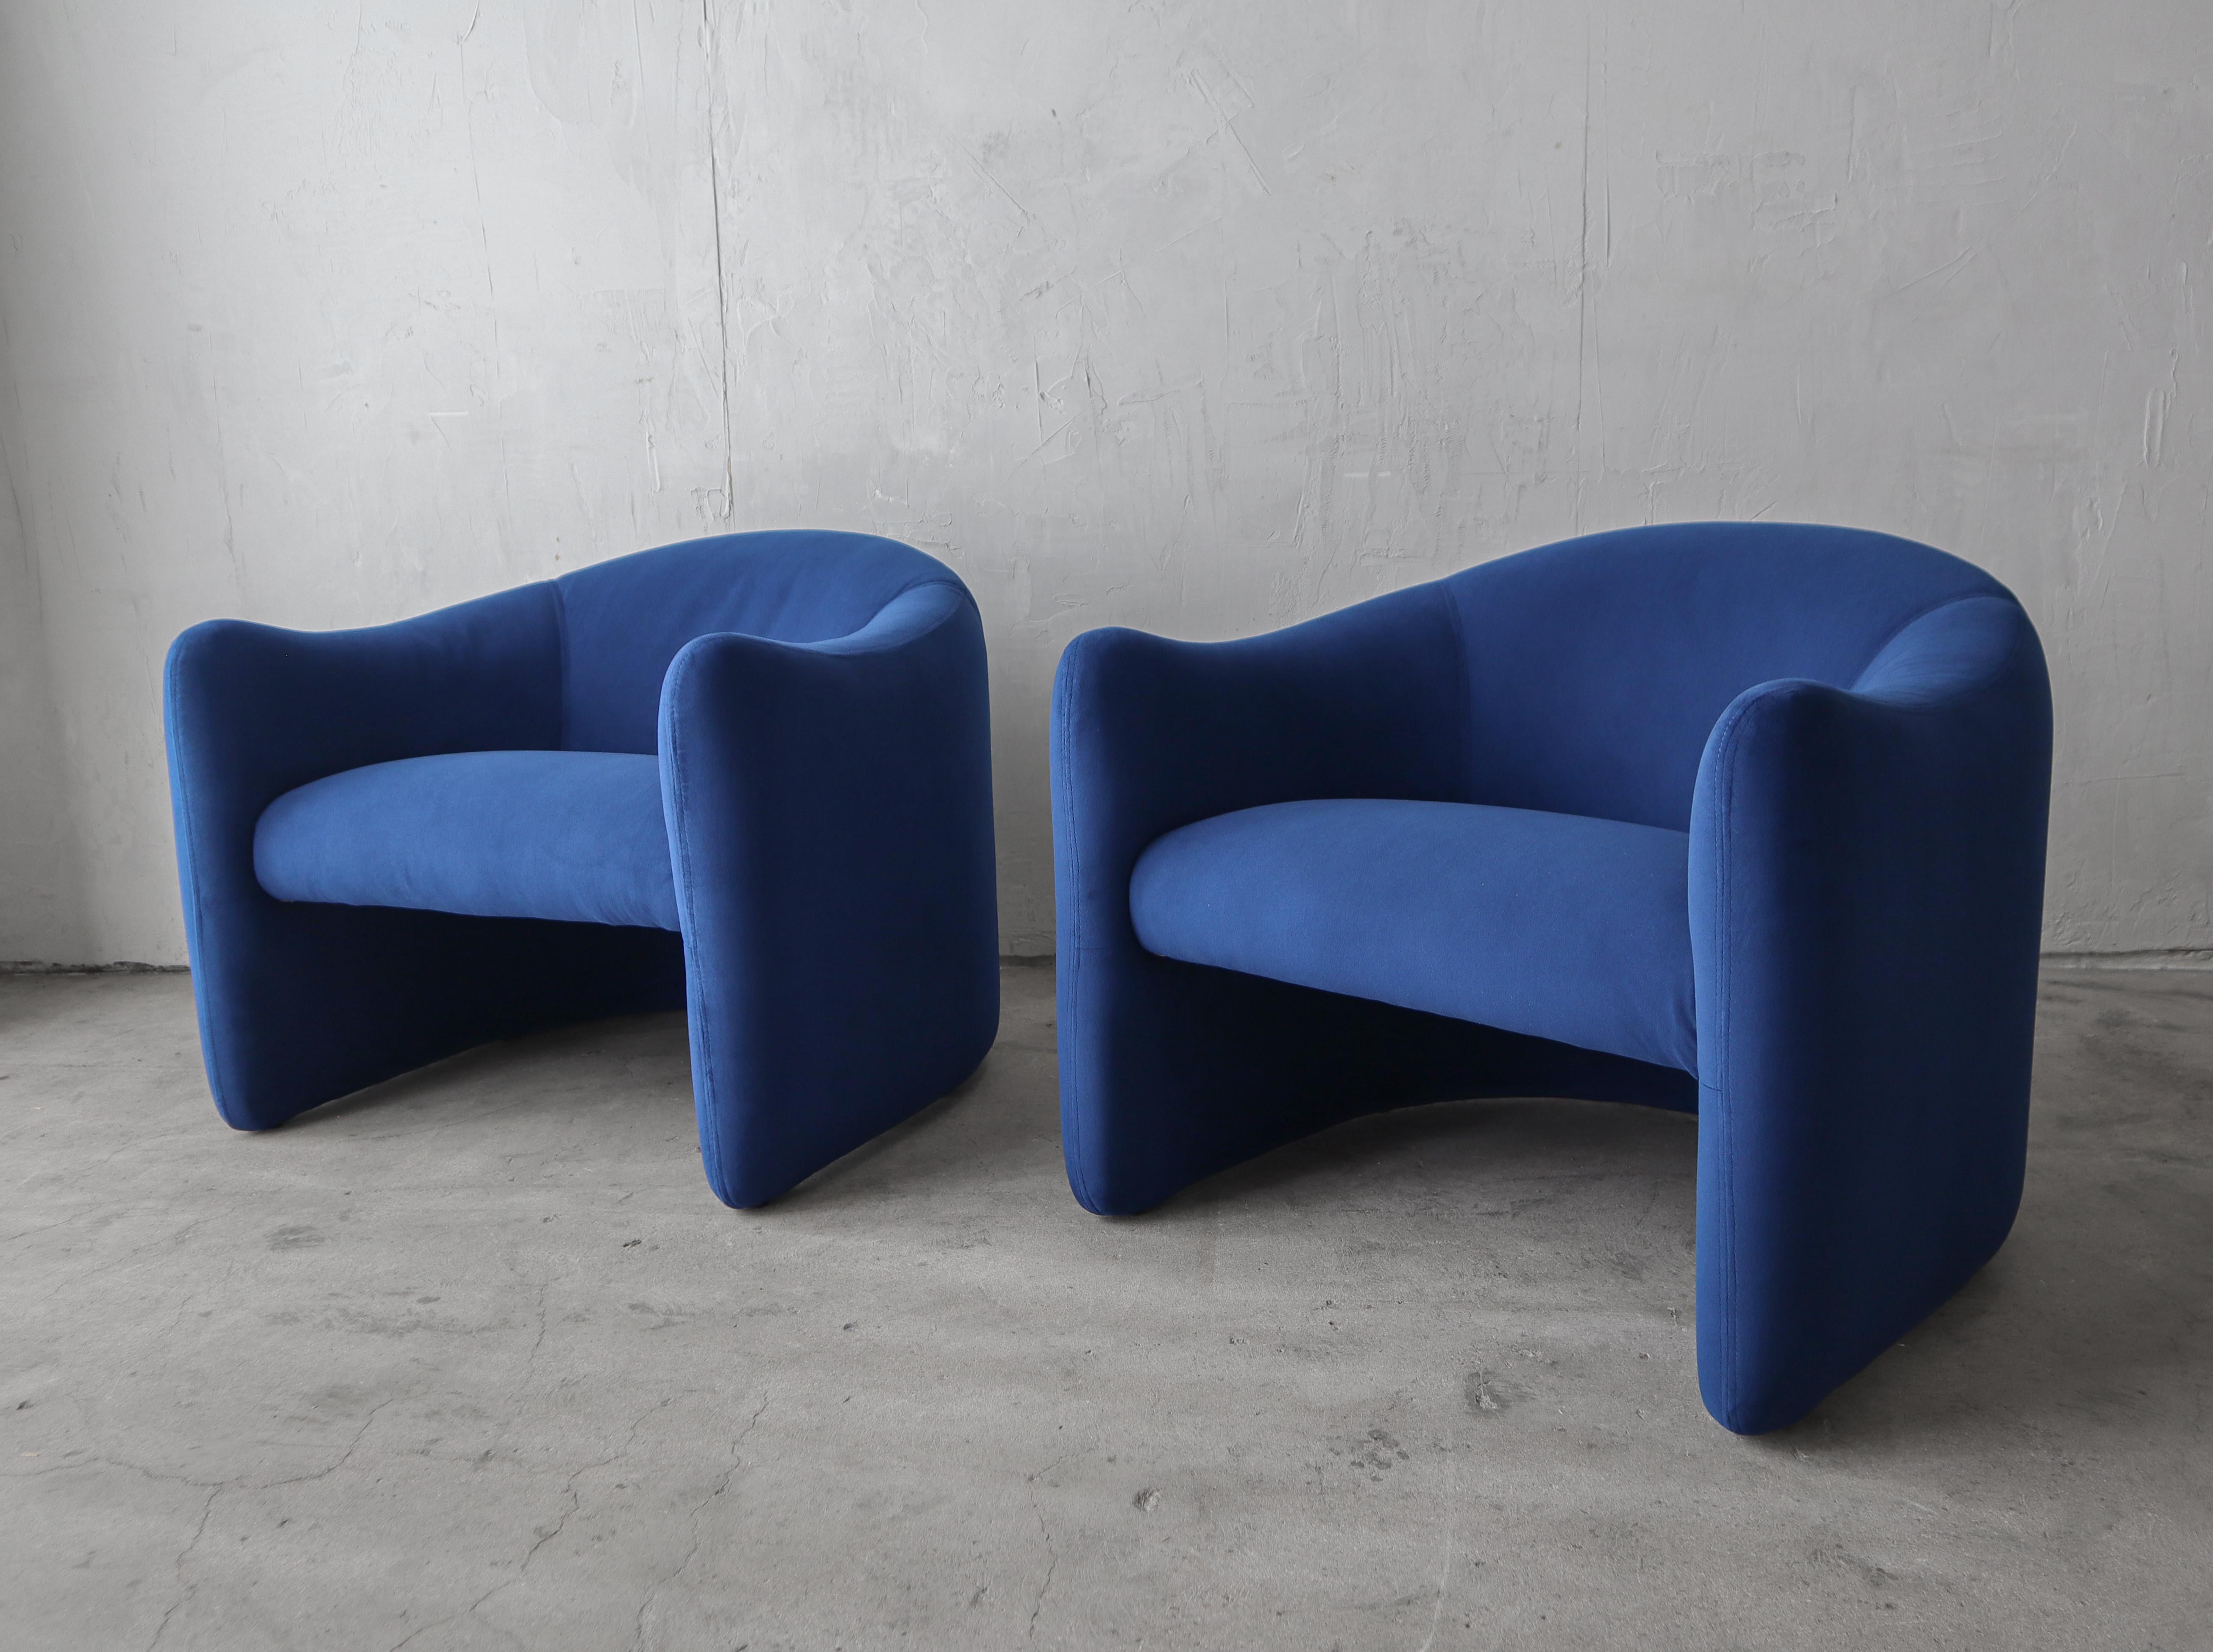 Belle paire de chaises longues post-modernes de Jules Heumann pour Metropolitan Furniture.  Les lignes de ces chaises sont convoitées, tant le design est beau. 

Les fauteuils ont été restaurés dans un tout nouveau velours bleu foncé.  Prêt pour